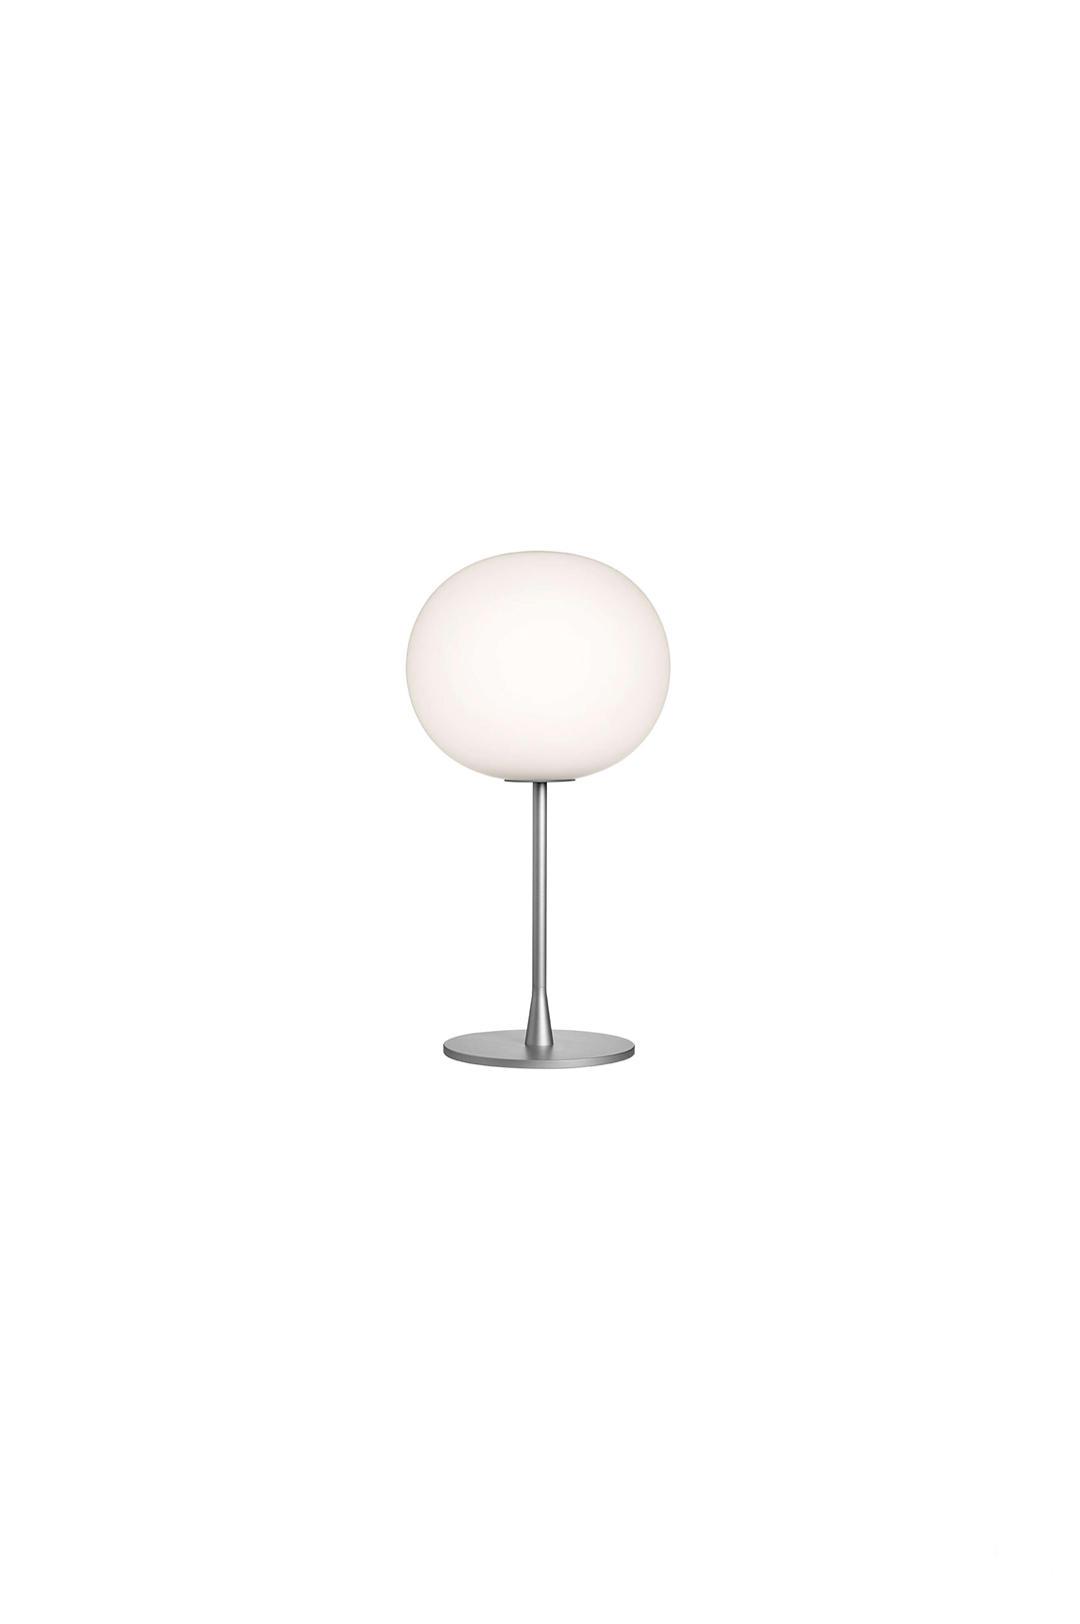 Настольная лампа Glo-Ball Table 1 от Flos — Фотография 1